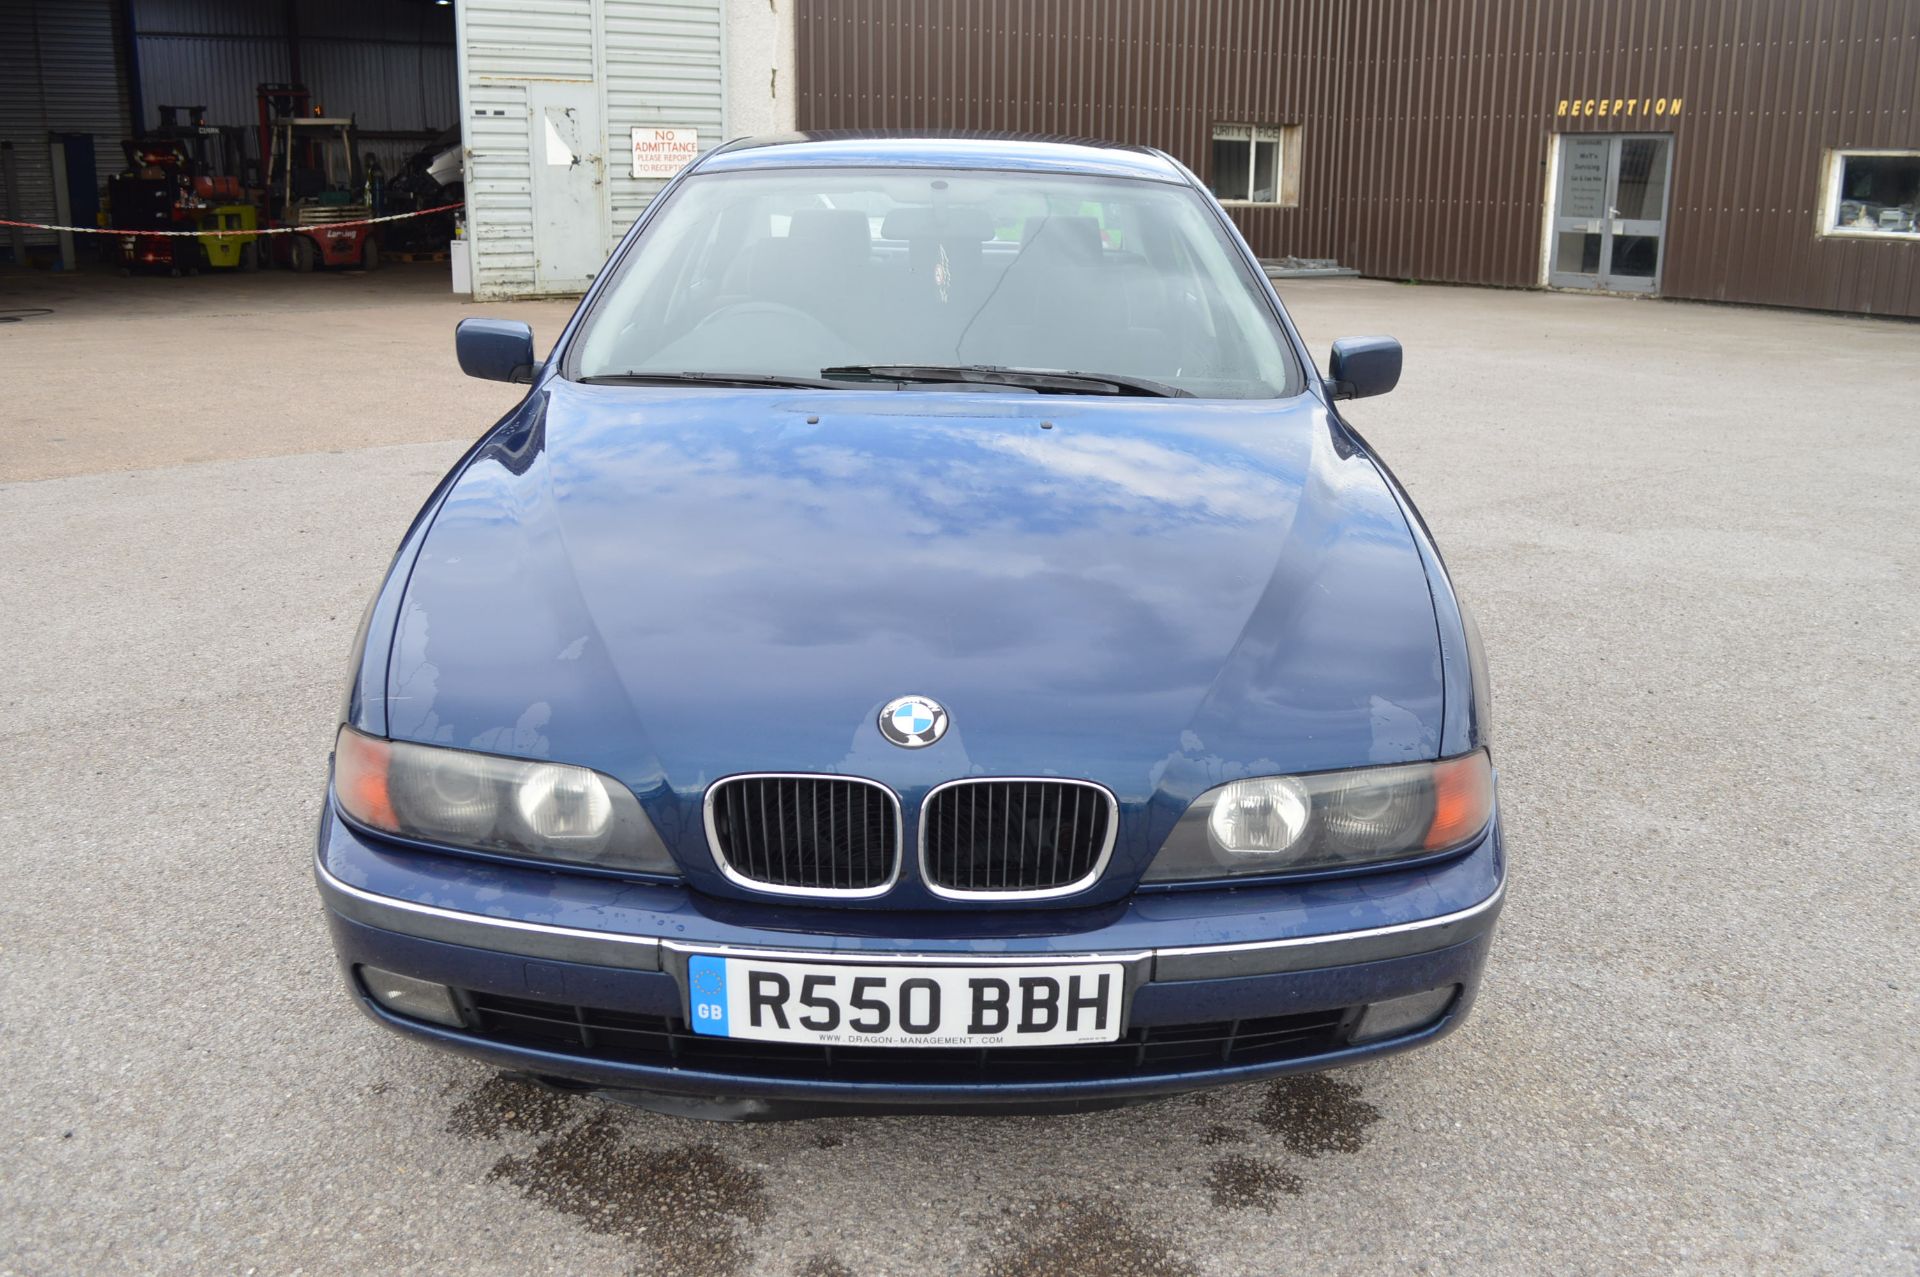 1998/R REG BLUE BMW 520I SE AUTOMATIC, AIR CON, 165K MILES *NO VAT* - Image 2 of 34